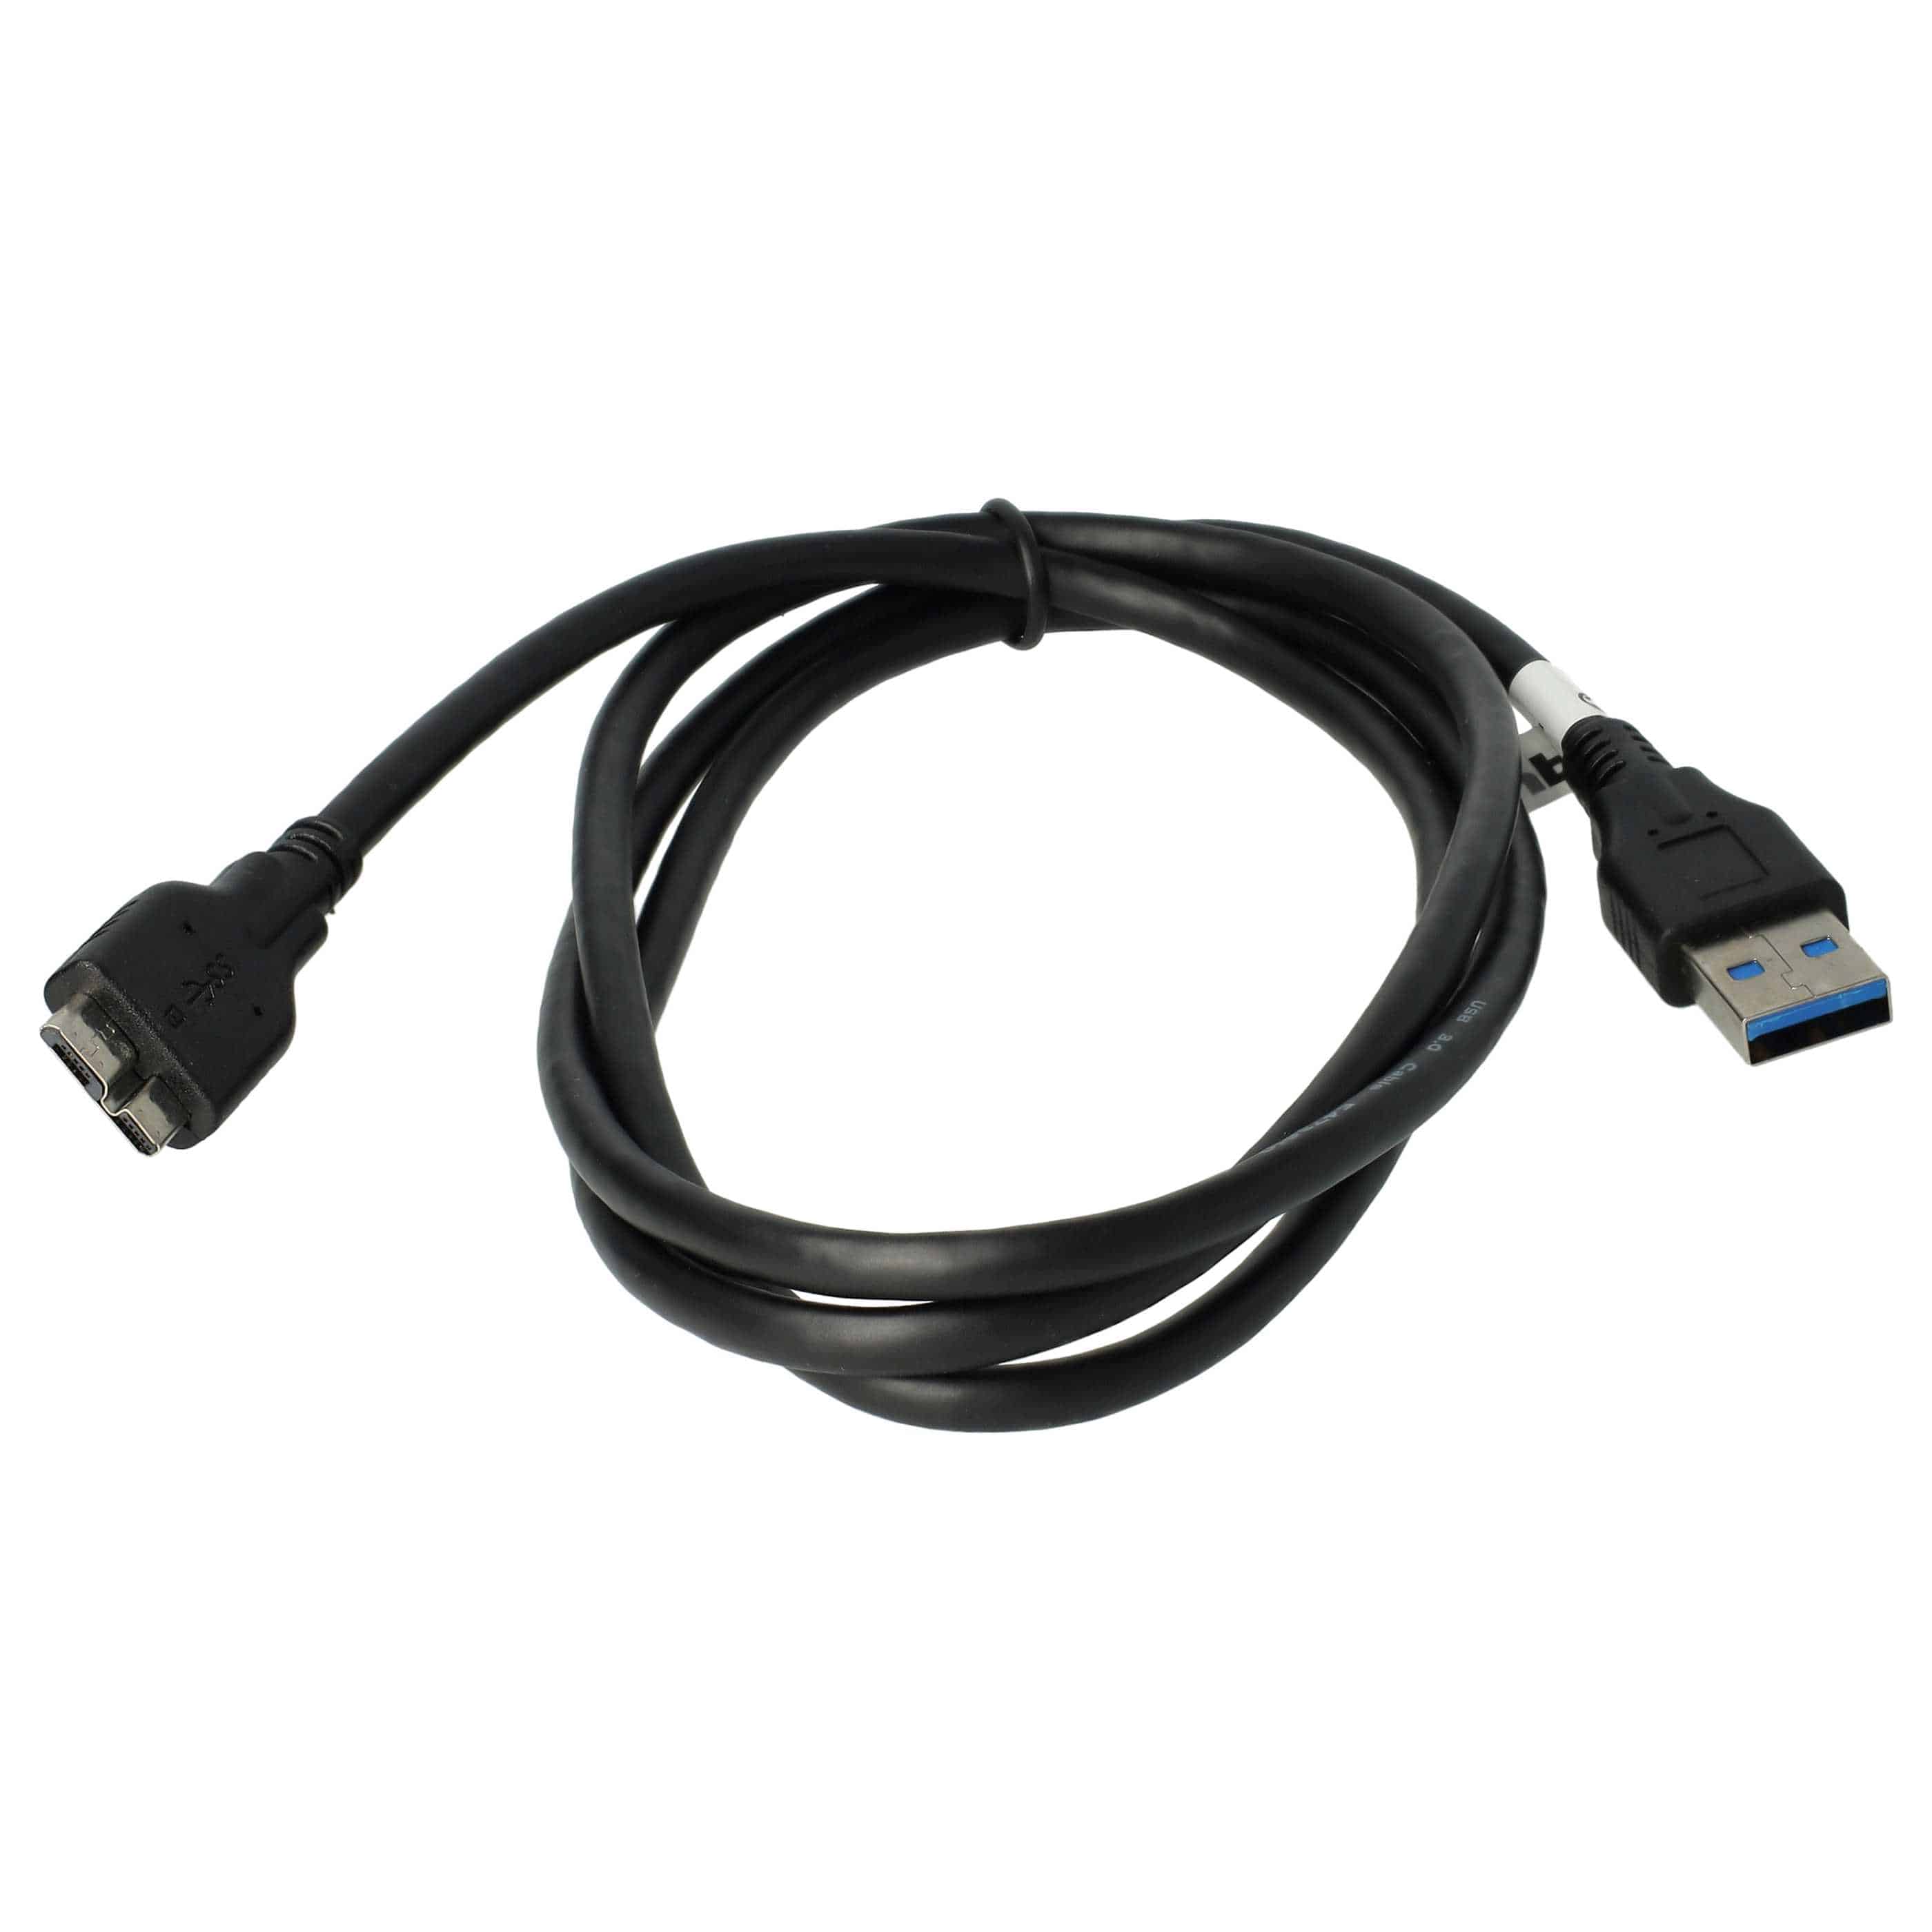 USB Data Cable replaces Nikon UC-E14, UC-E22 for Nikon Camera - 150 cm